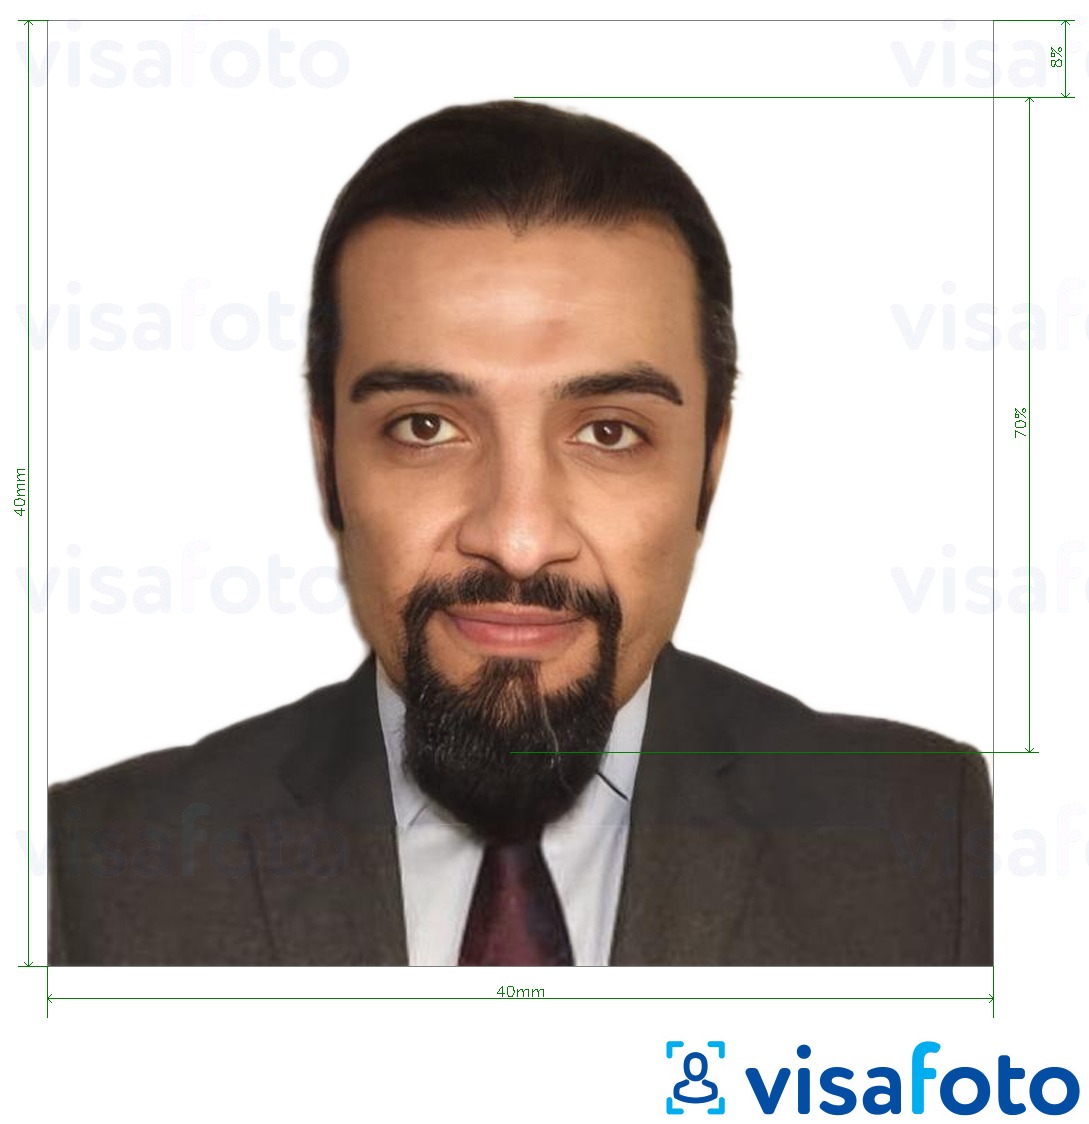 نمونه ی یک عکس برای پاسپورت سوریه 40*40 میلی متر با مشخصات دقیق